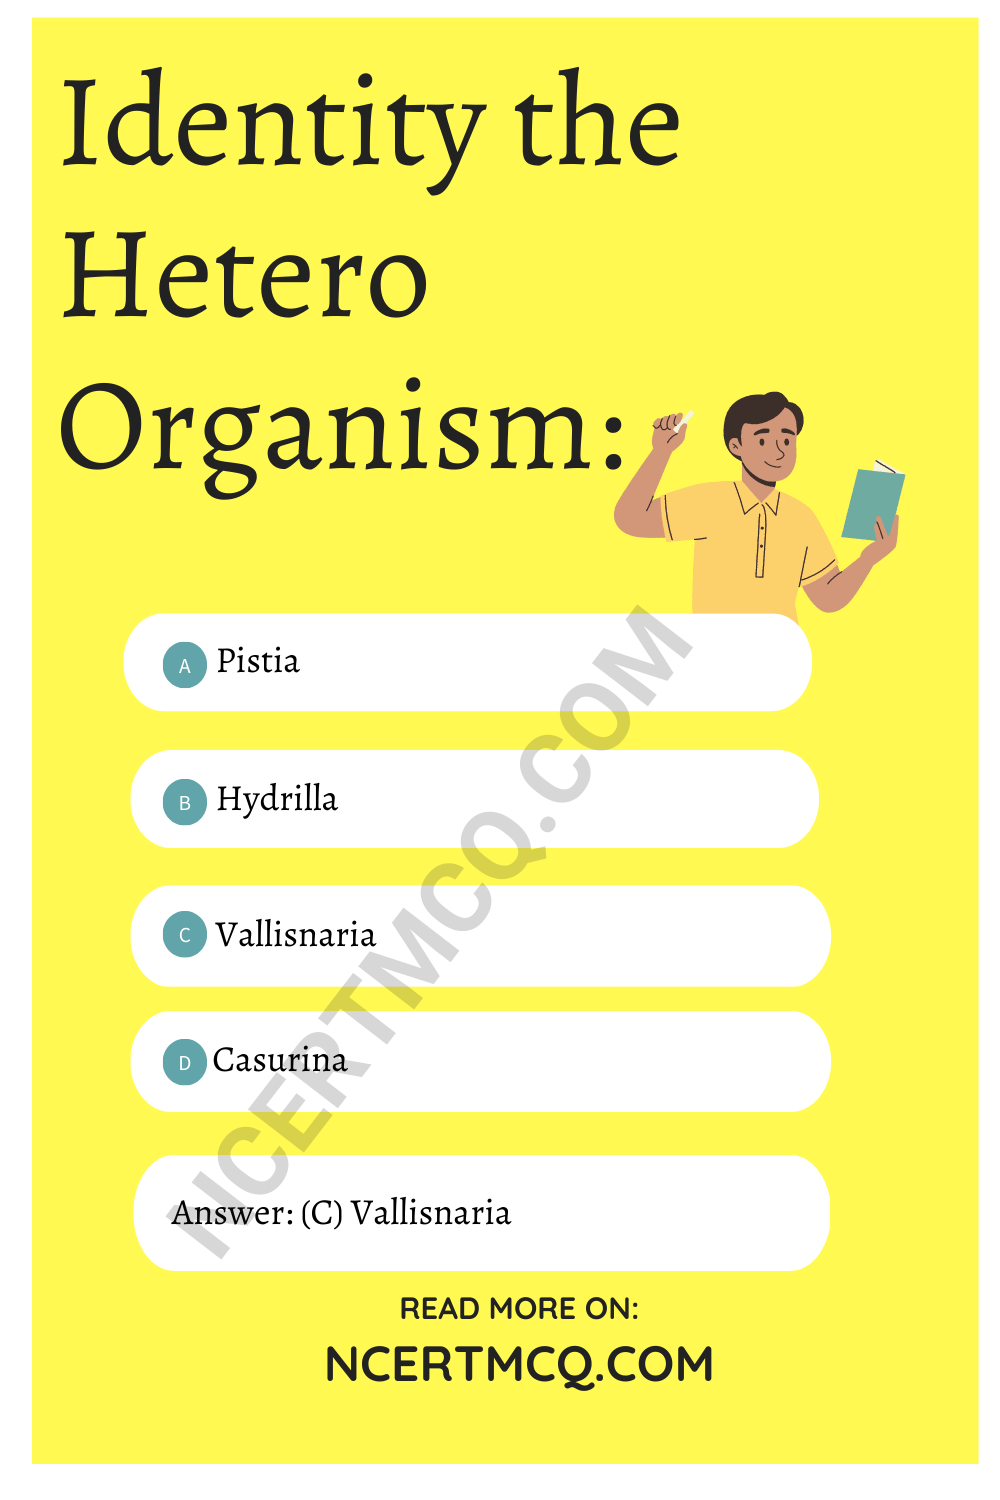 Identity the Hetero Organism: